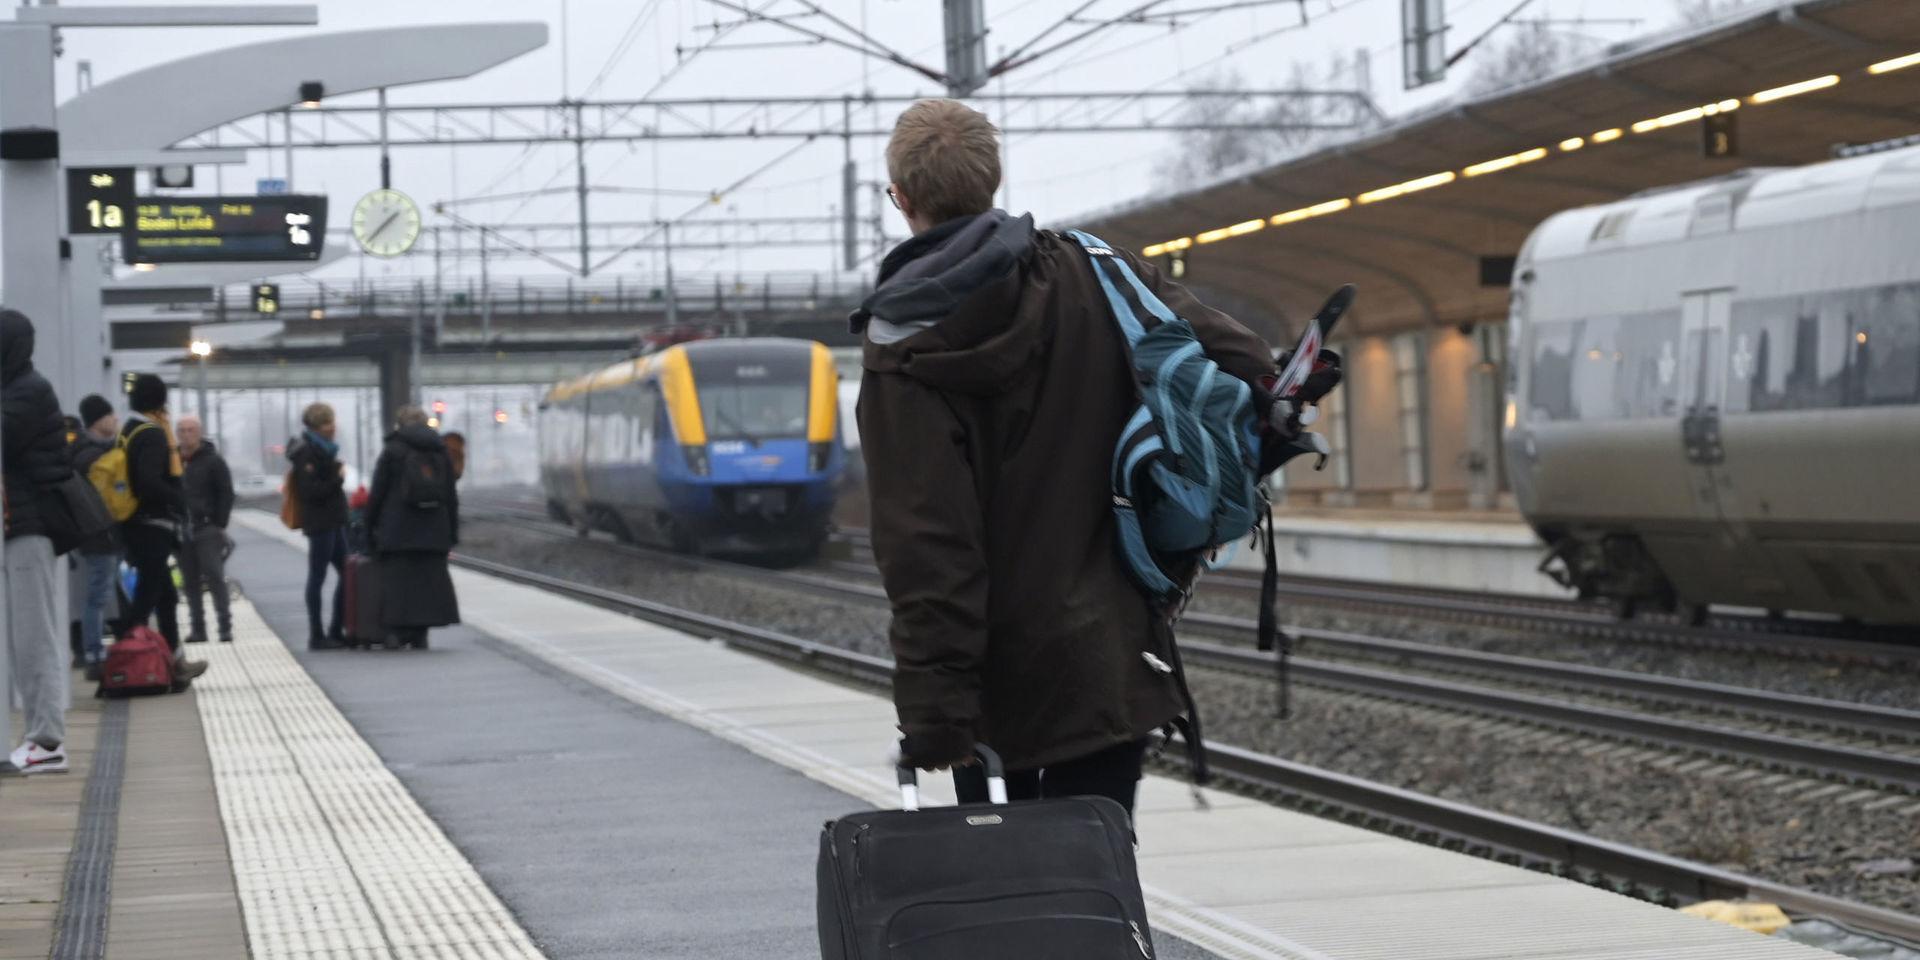 Hela Västsverige skärs av från järnvägsnätet till landets nordligare delar om nattågen från Göteborg till Norrland läggs ner, skriver insändarskribenten.